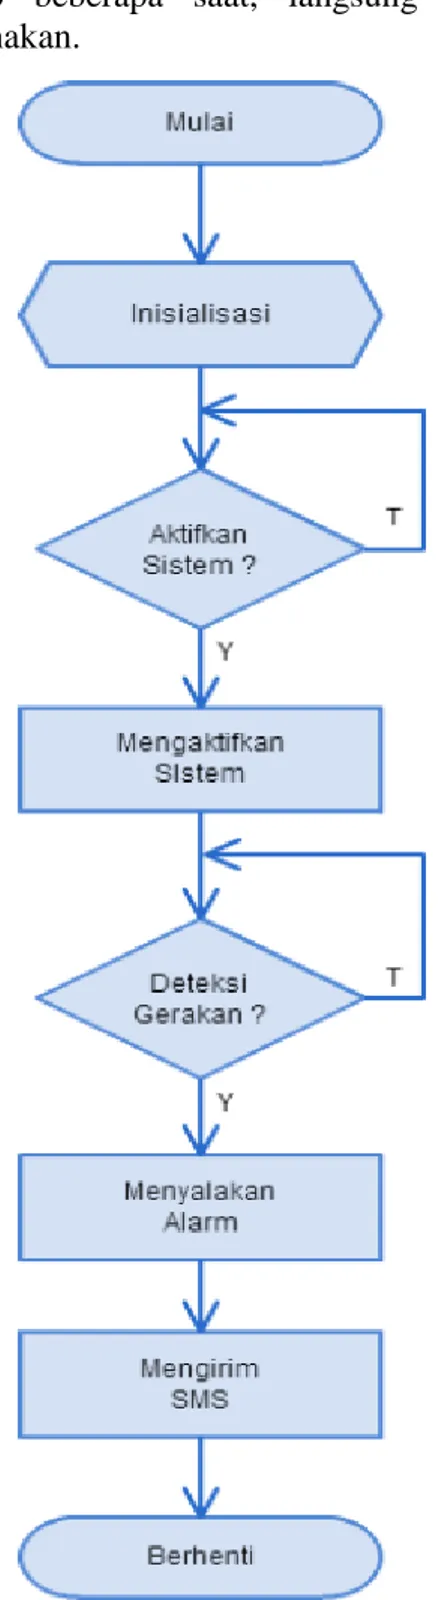 Gambar 2. Diagram alir sistem  keamanan rumah 